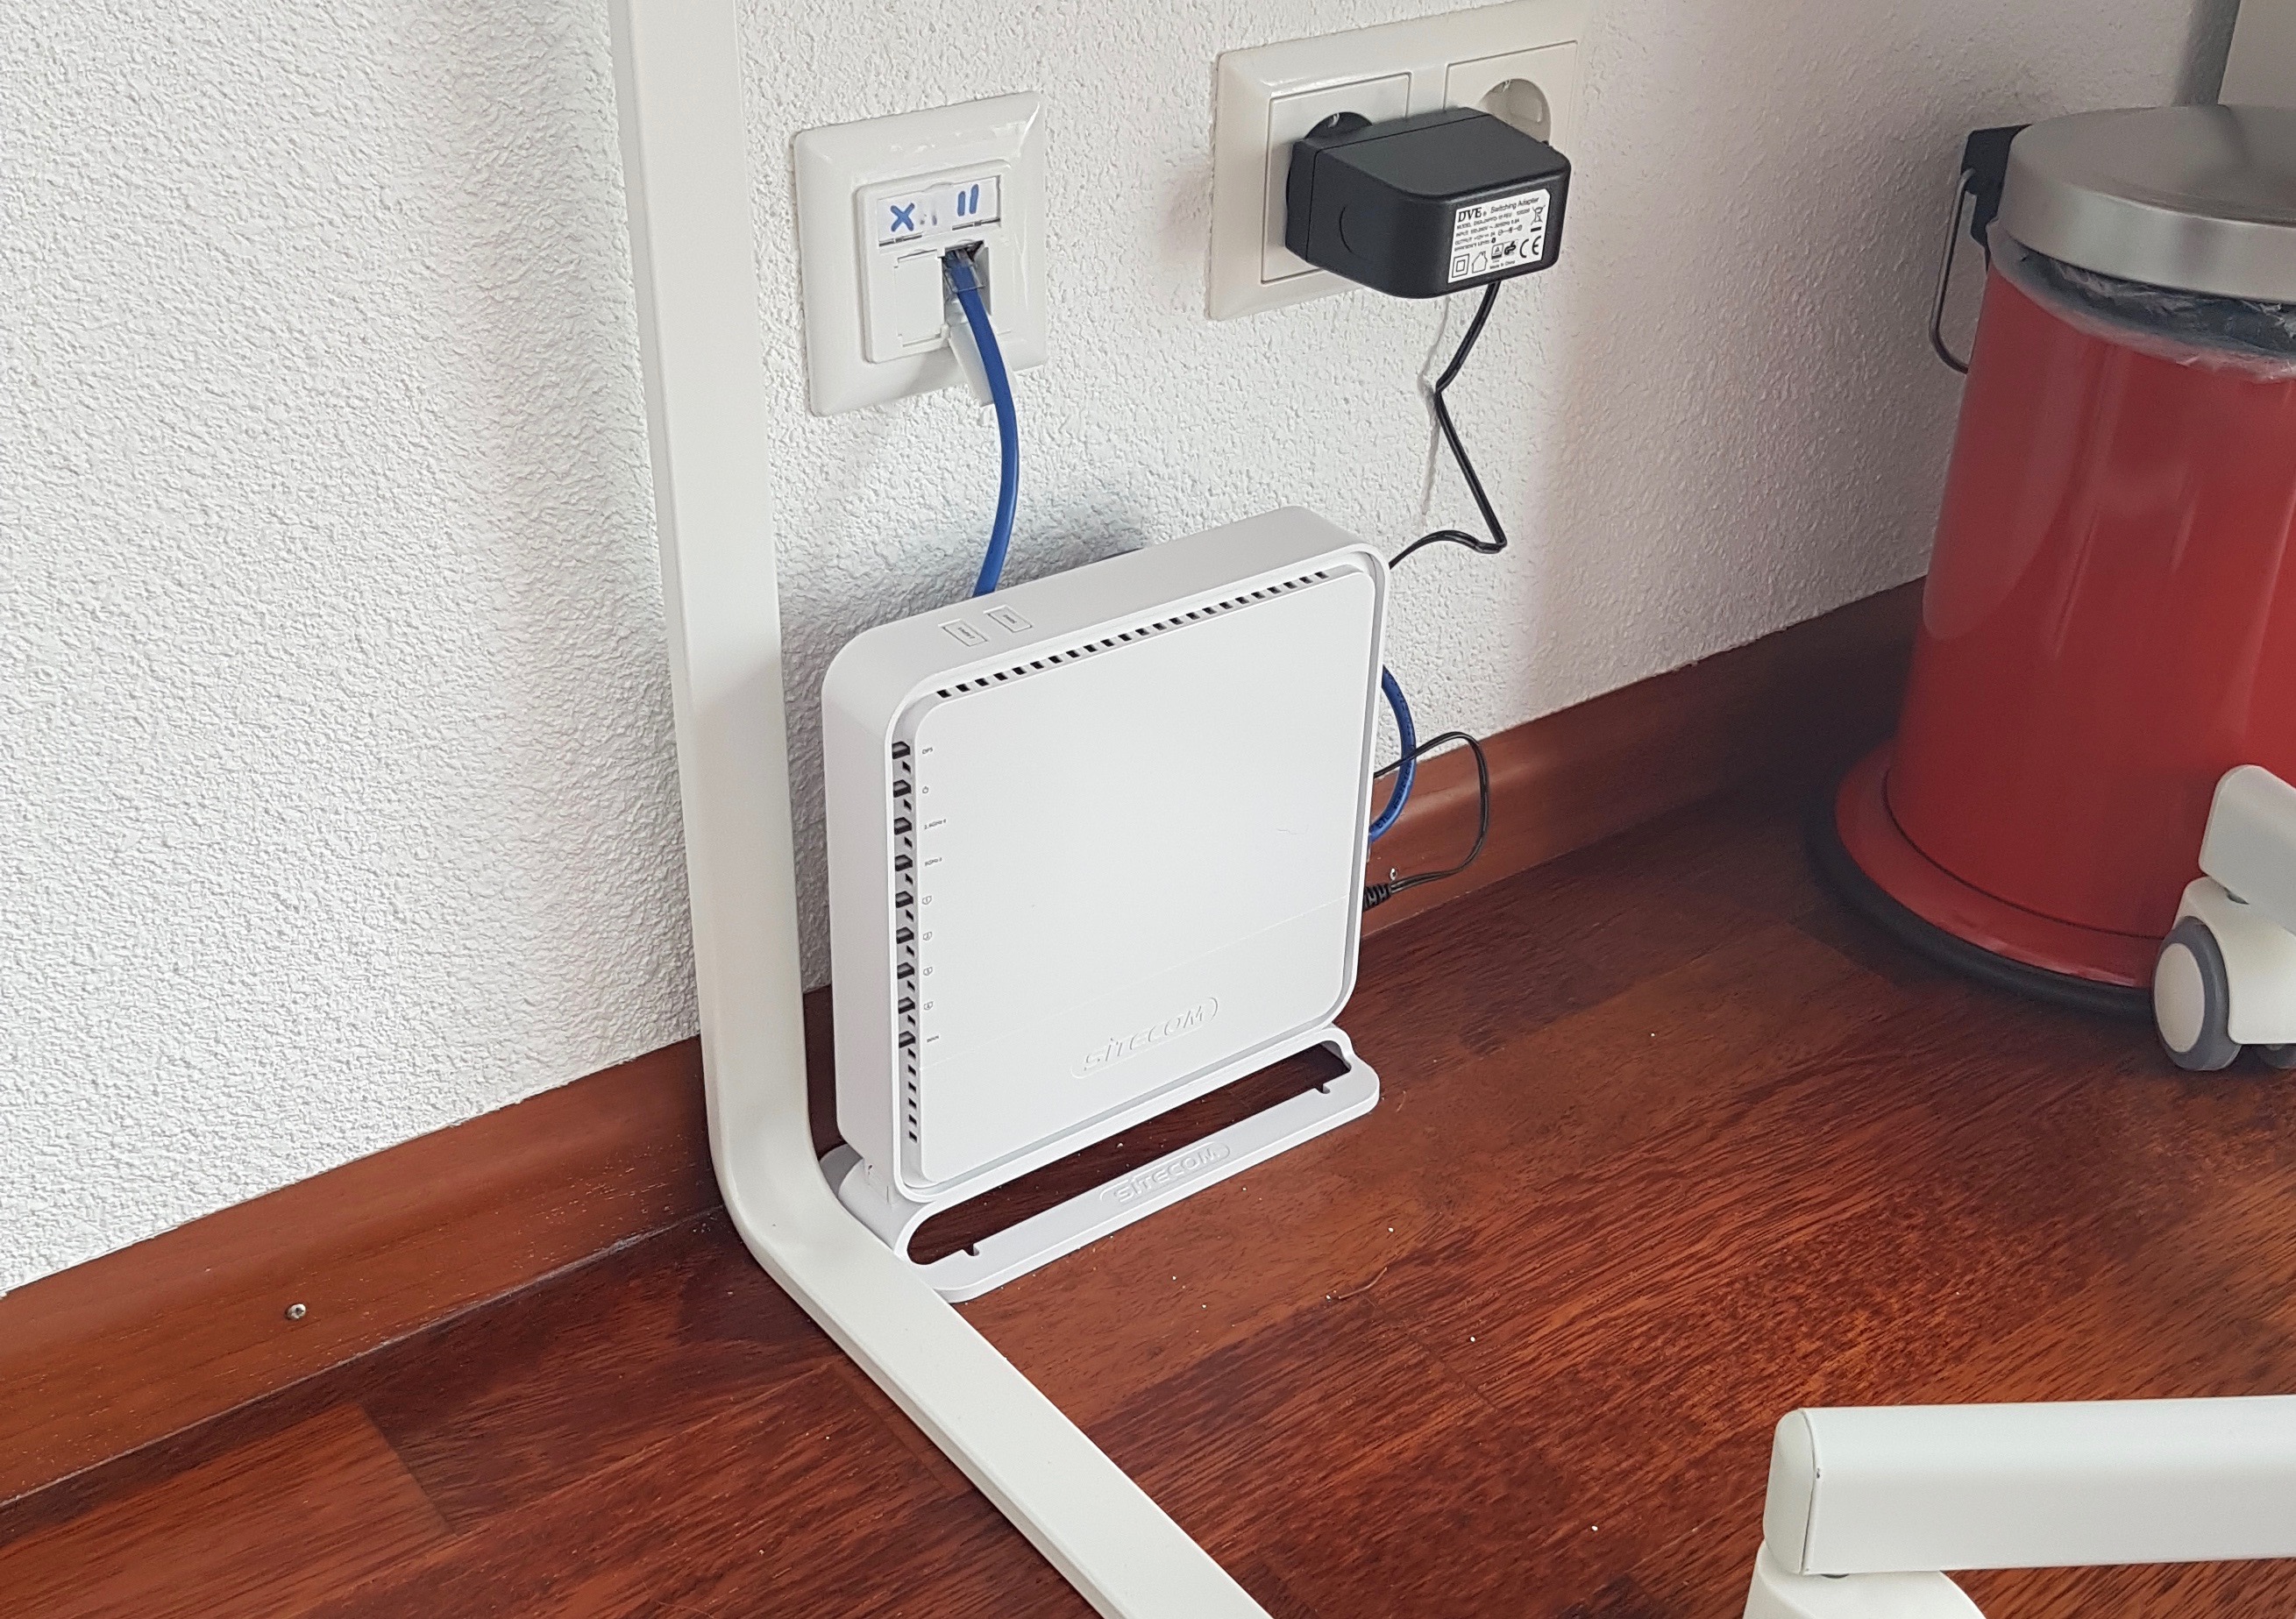 Aanvulling heilig Kosciuszko WiFi signaal verbeteren en aanleg internetkabels - Madicom